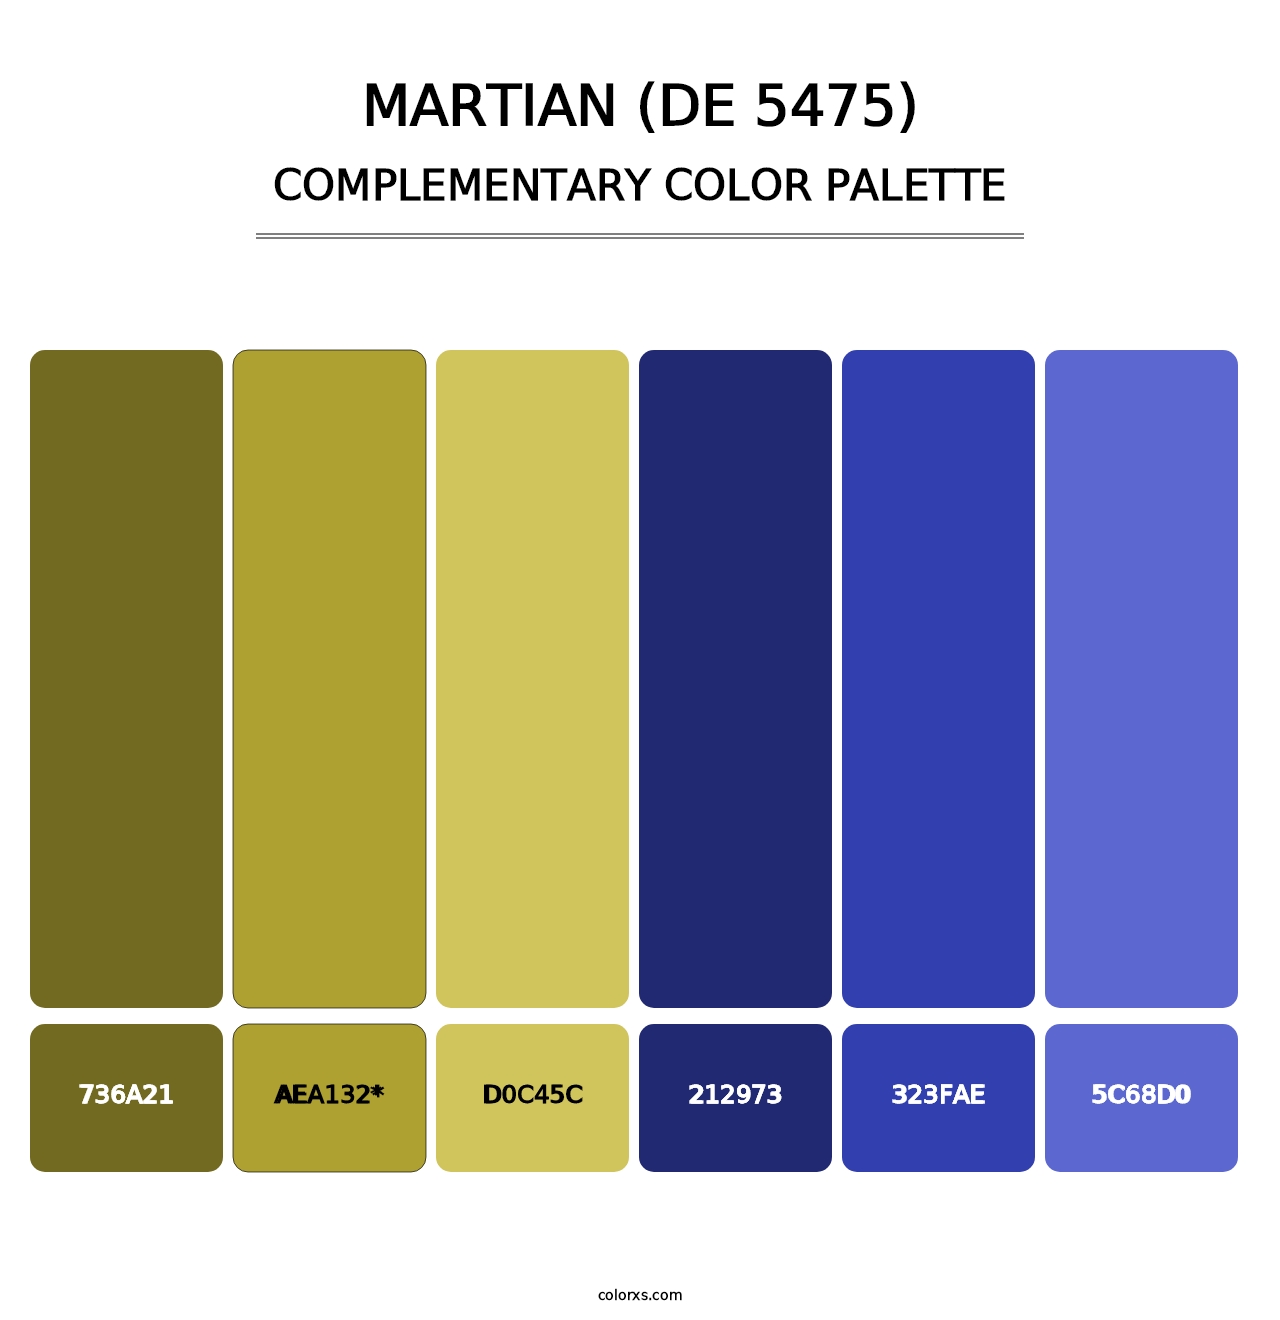 Martian (DE 5475) - Complementary Color Palette